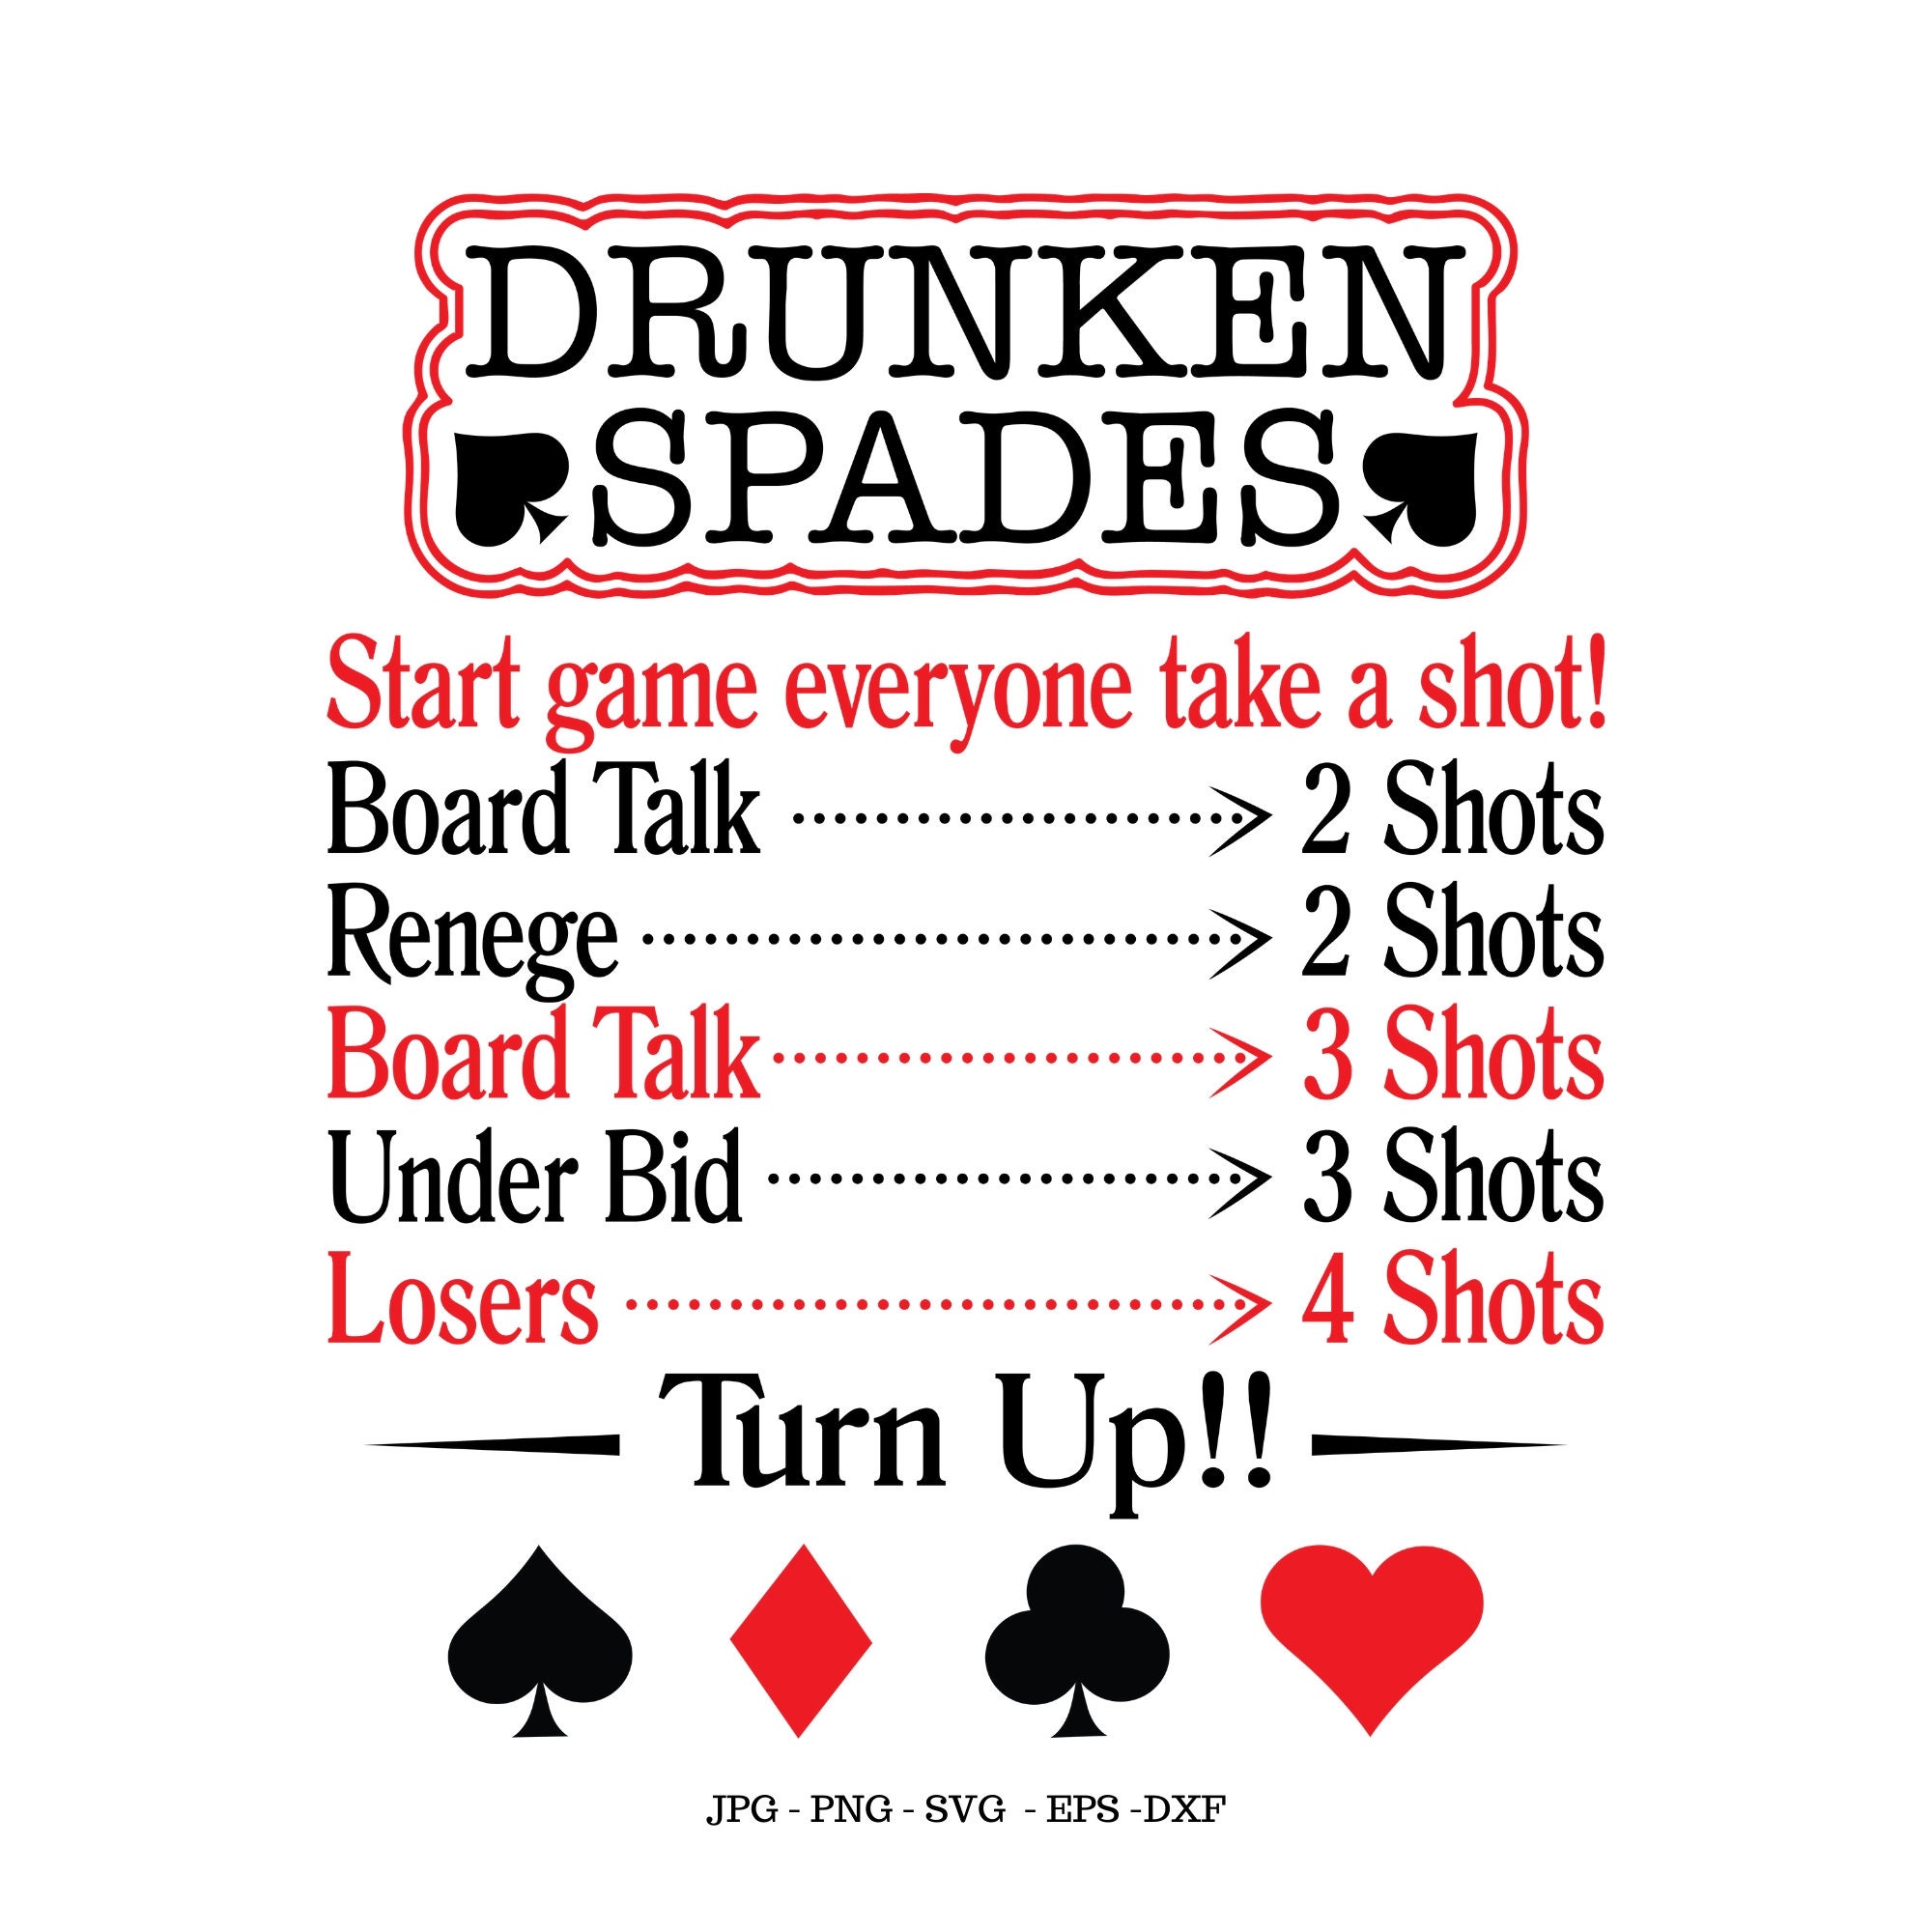  Shotgun King Card Game for Game Night, Parties